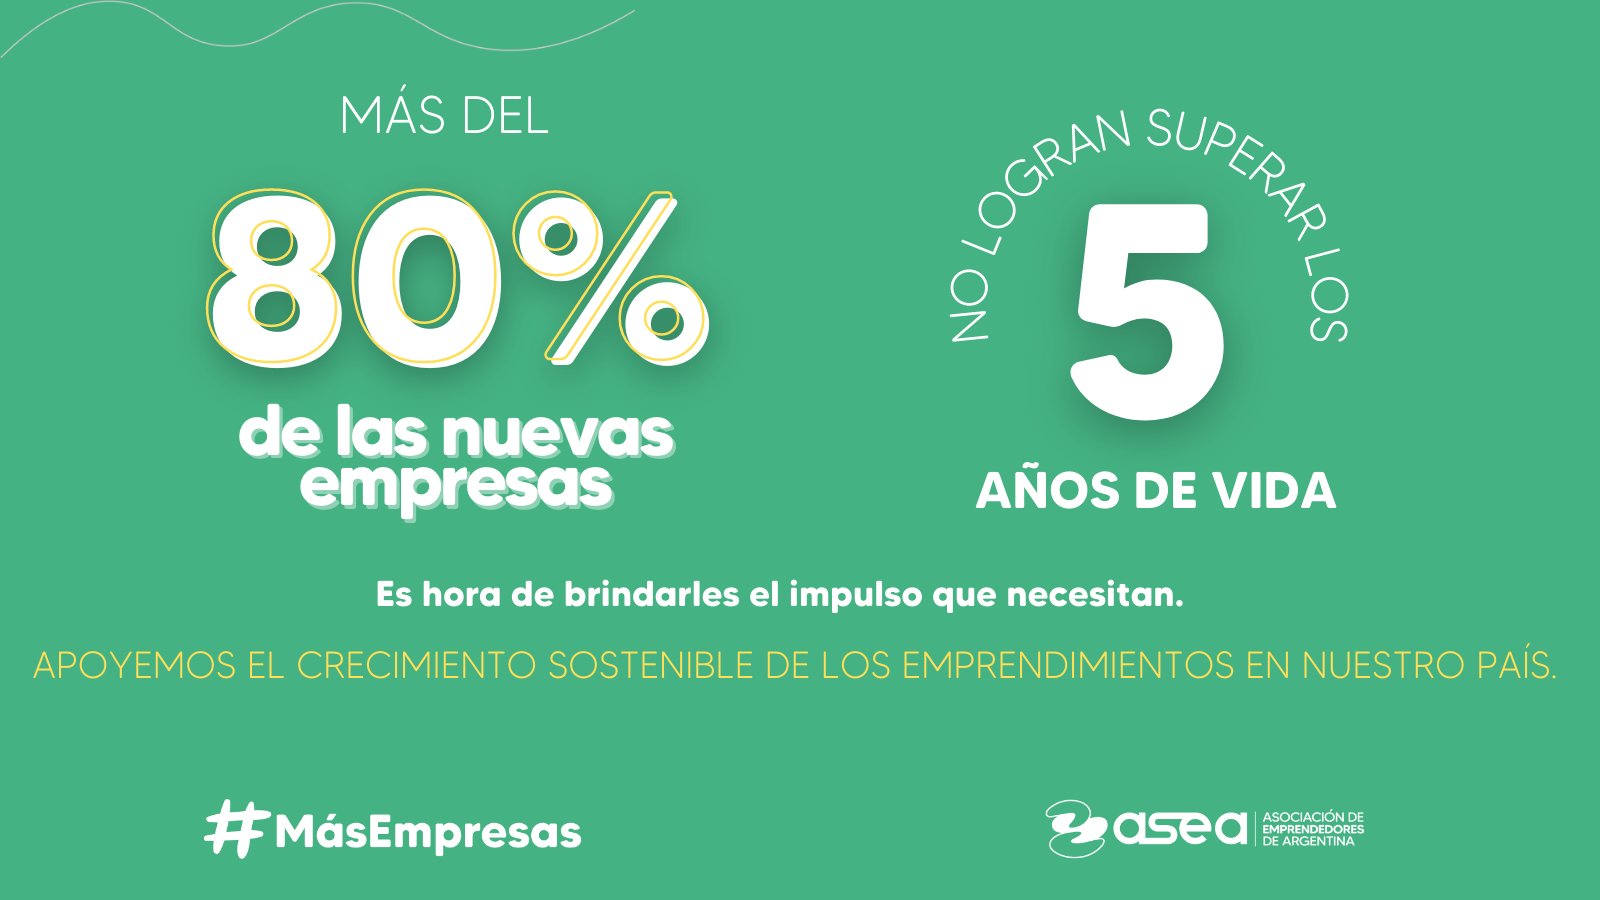 CEVEC acompaña la propuesta #masempresas